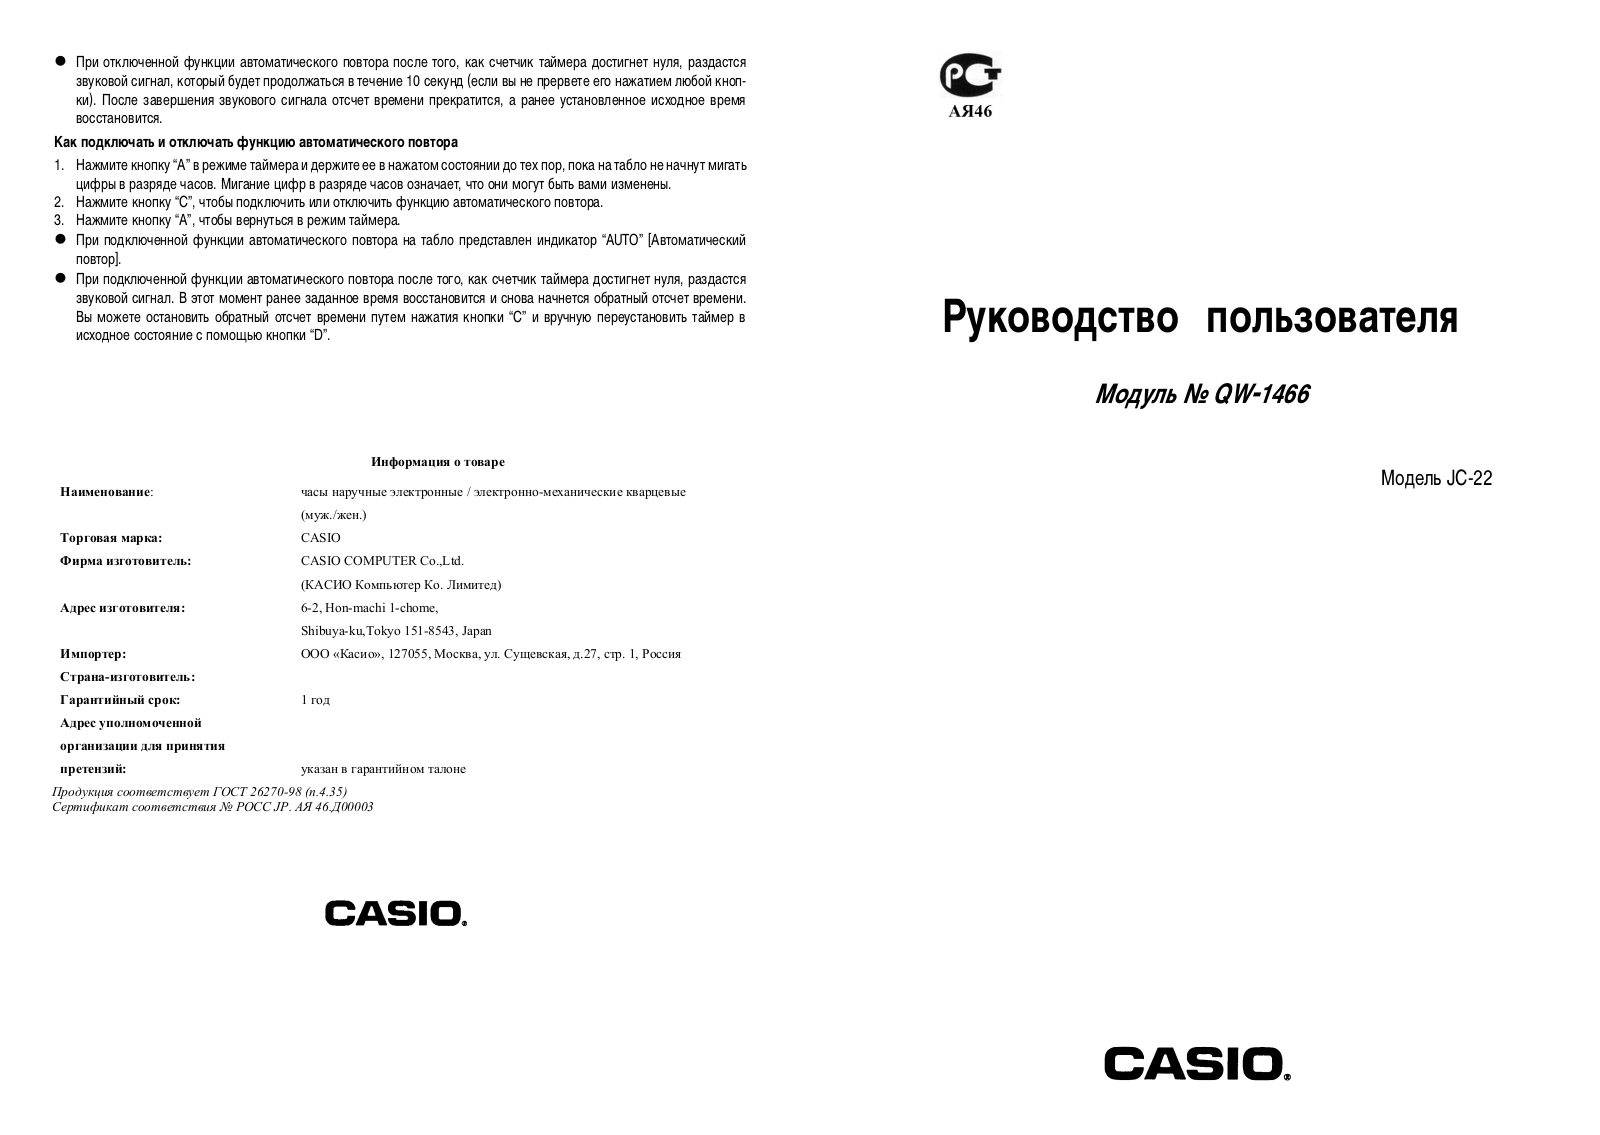 Casio 1466 User Manual